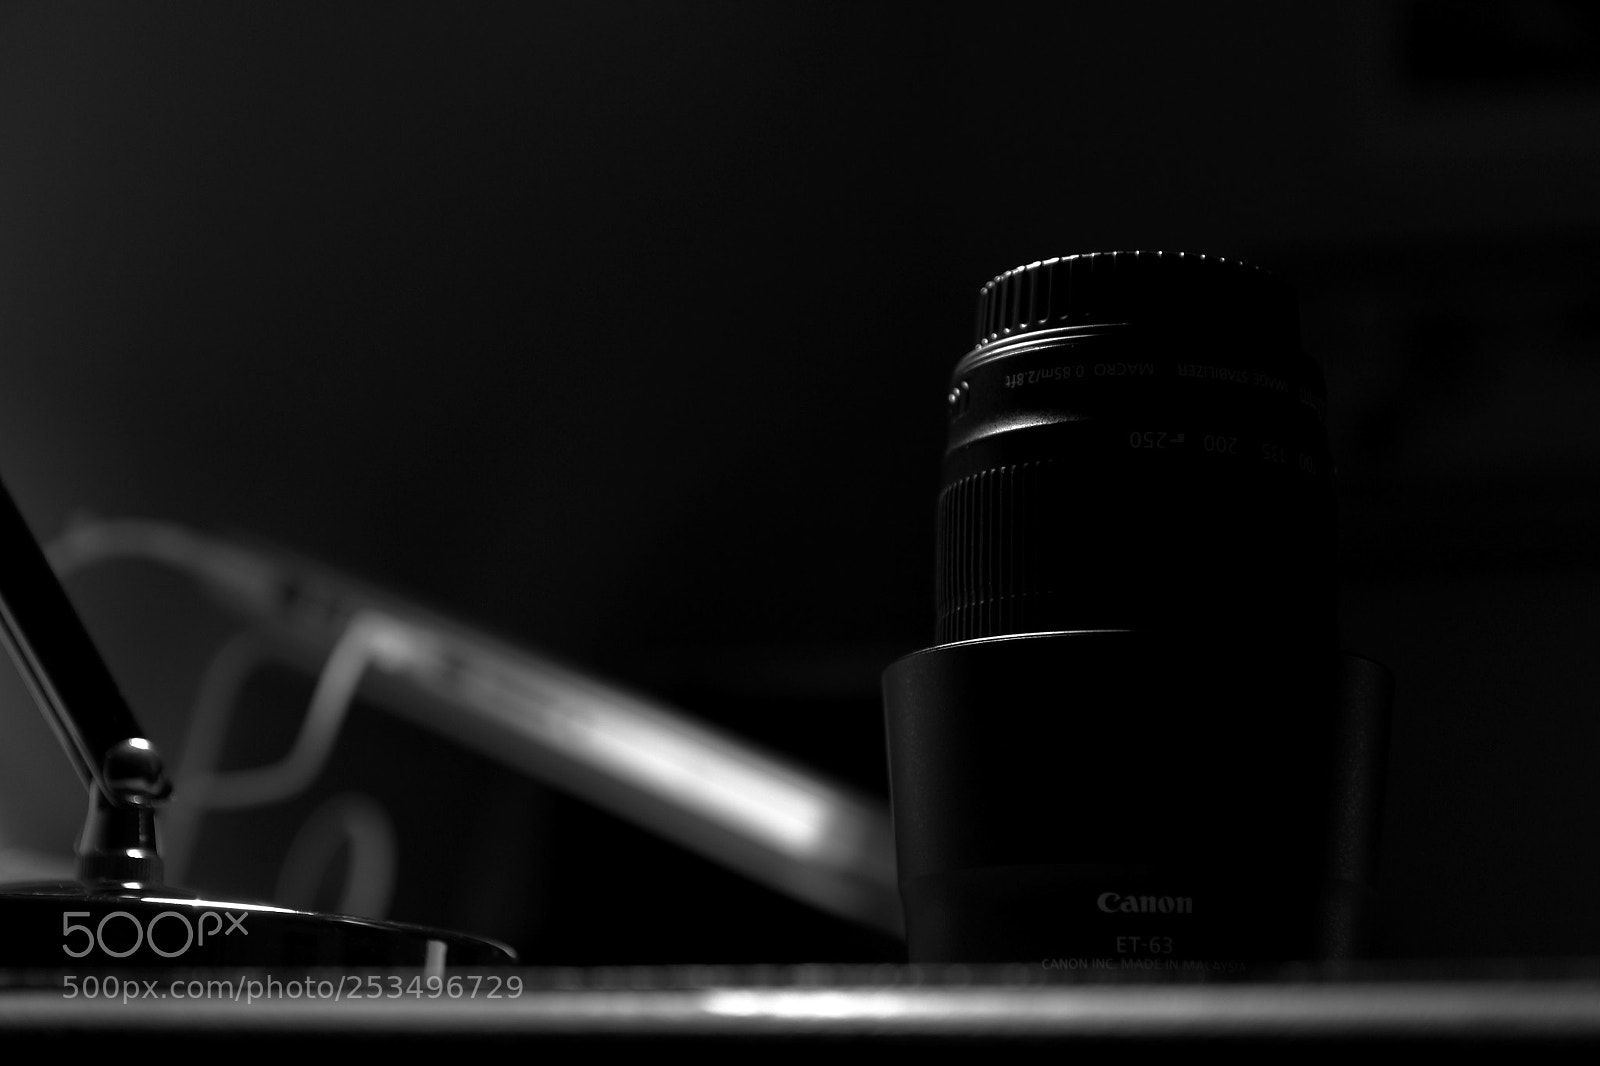 Canon EOS 100D (EOS Rebel SL1 / EOS Kiss X7) sample photo. Entre ombre et lumi photography